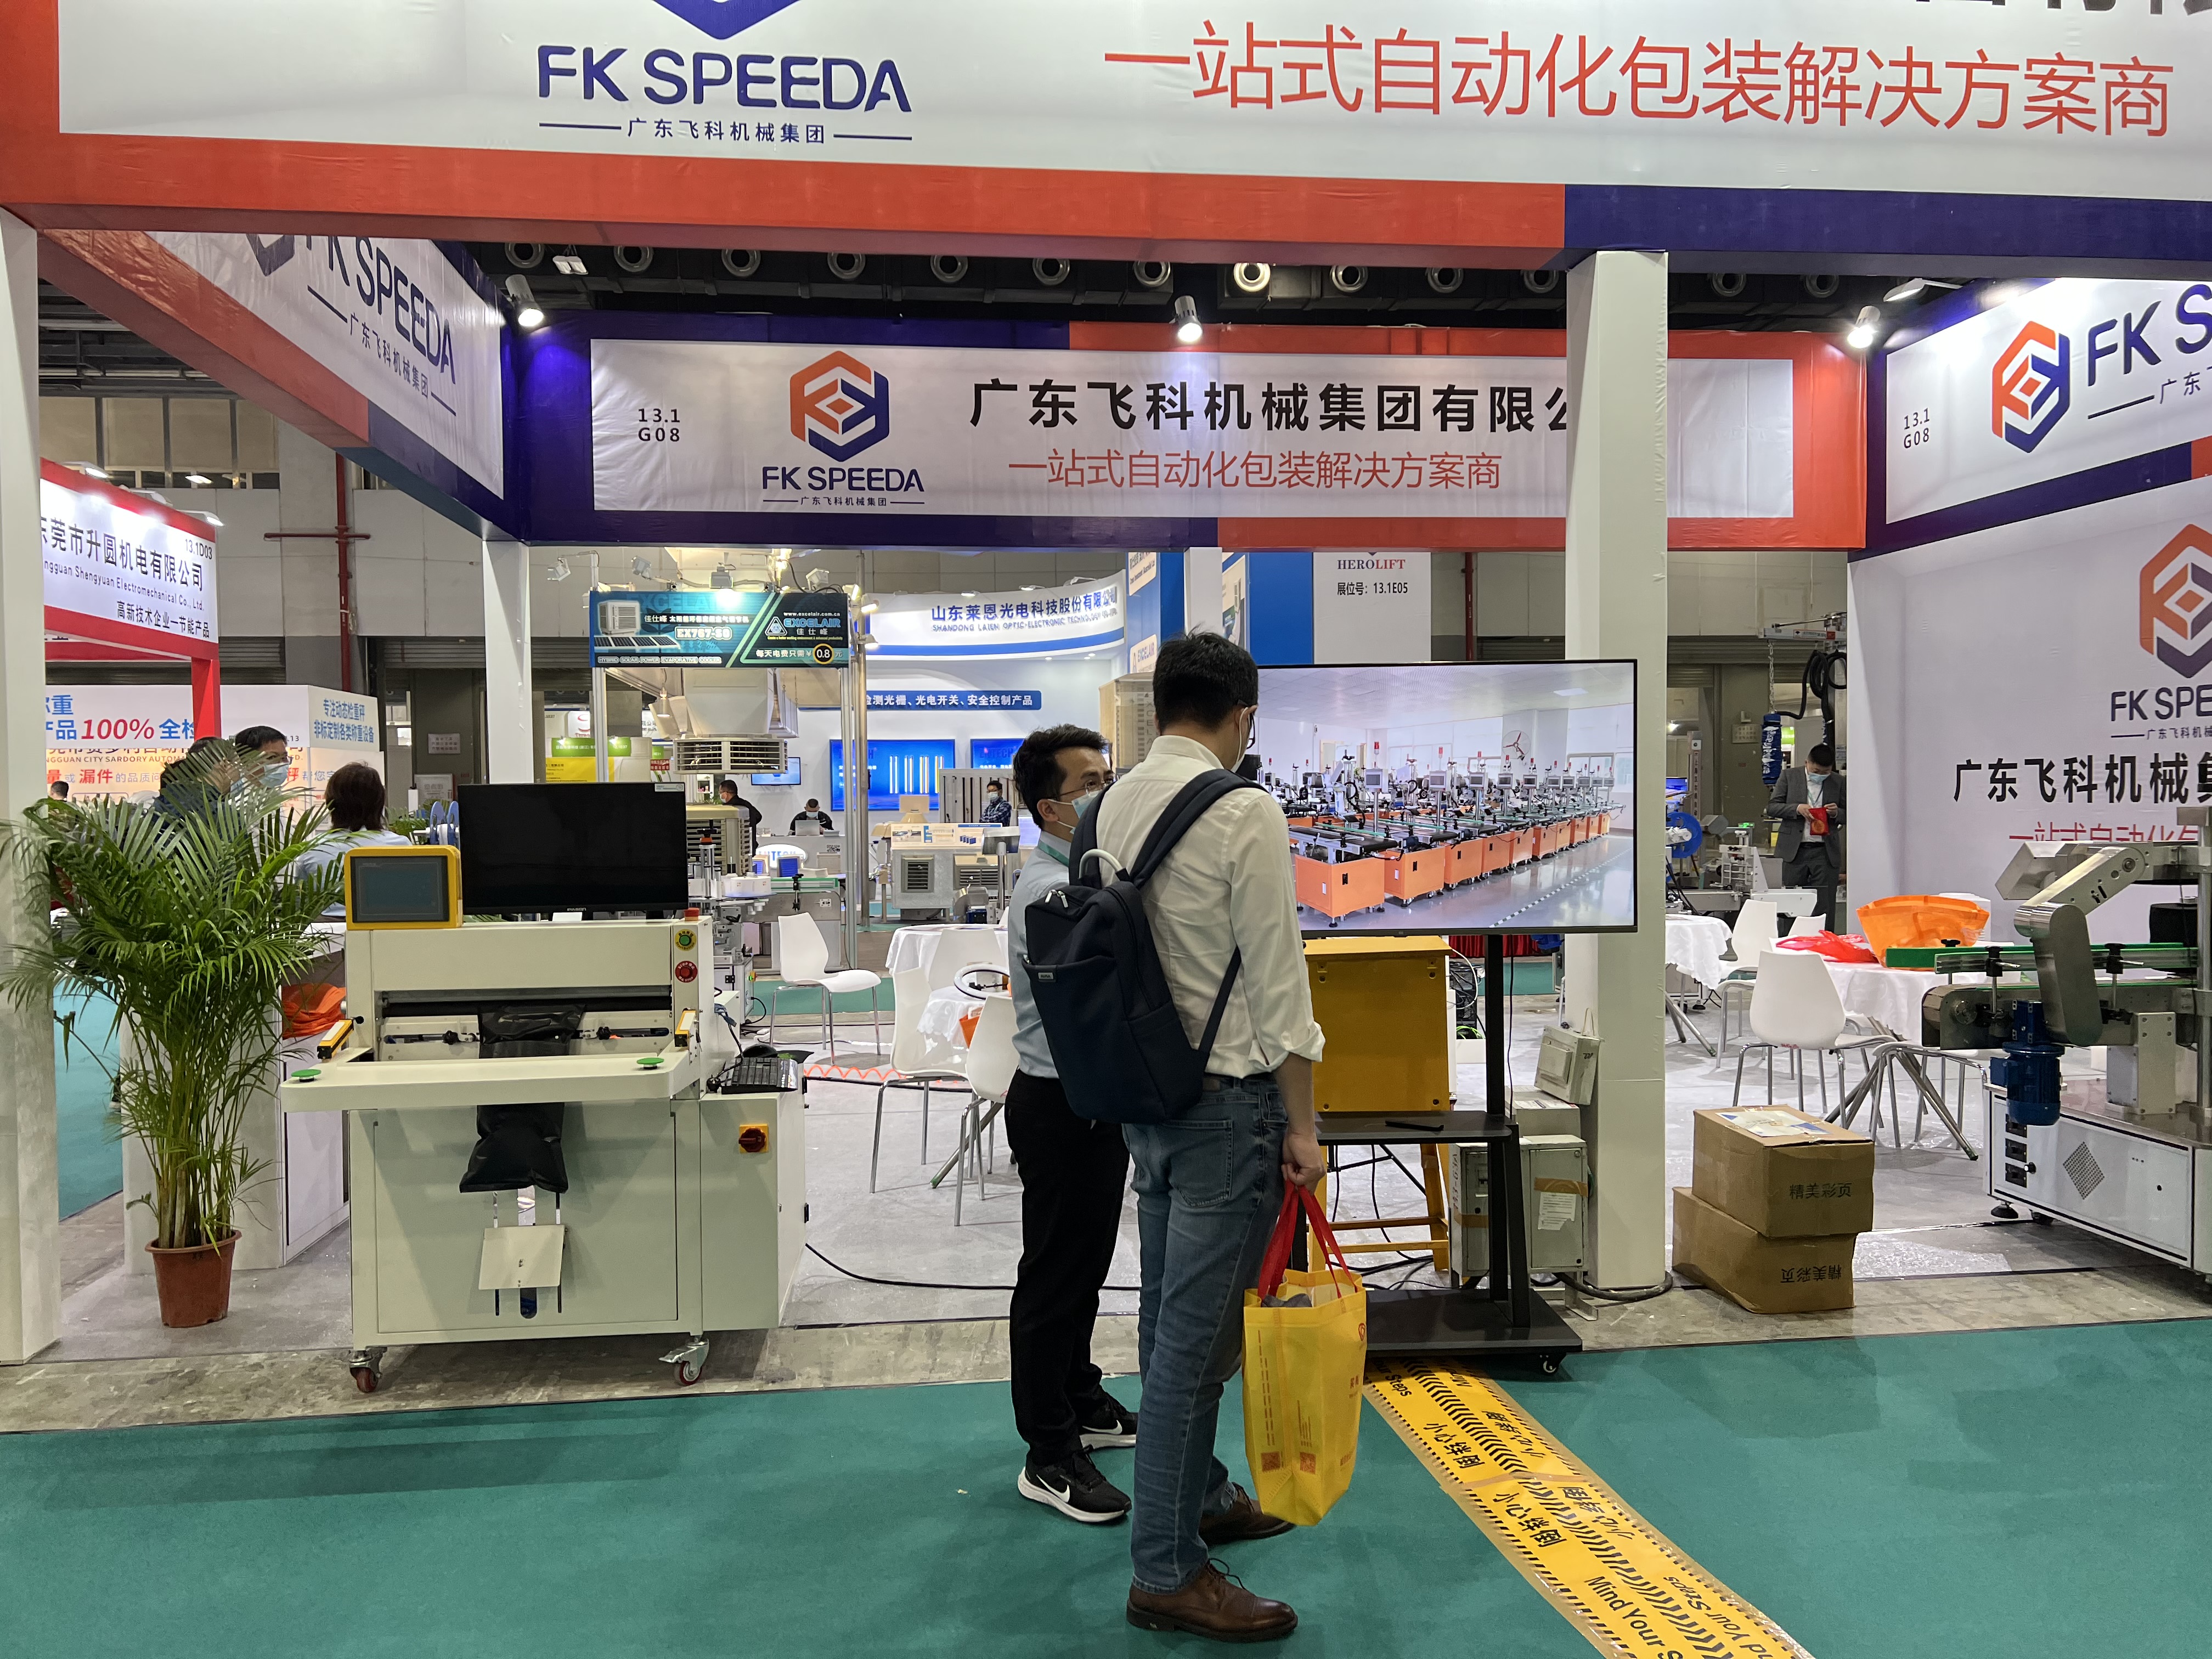 Έκθεση—Ο Όμιλος Guangdong Fineco Machinery συμμετείχε στη διεθνή έκθεση guangzhou Pazhou